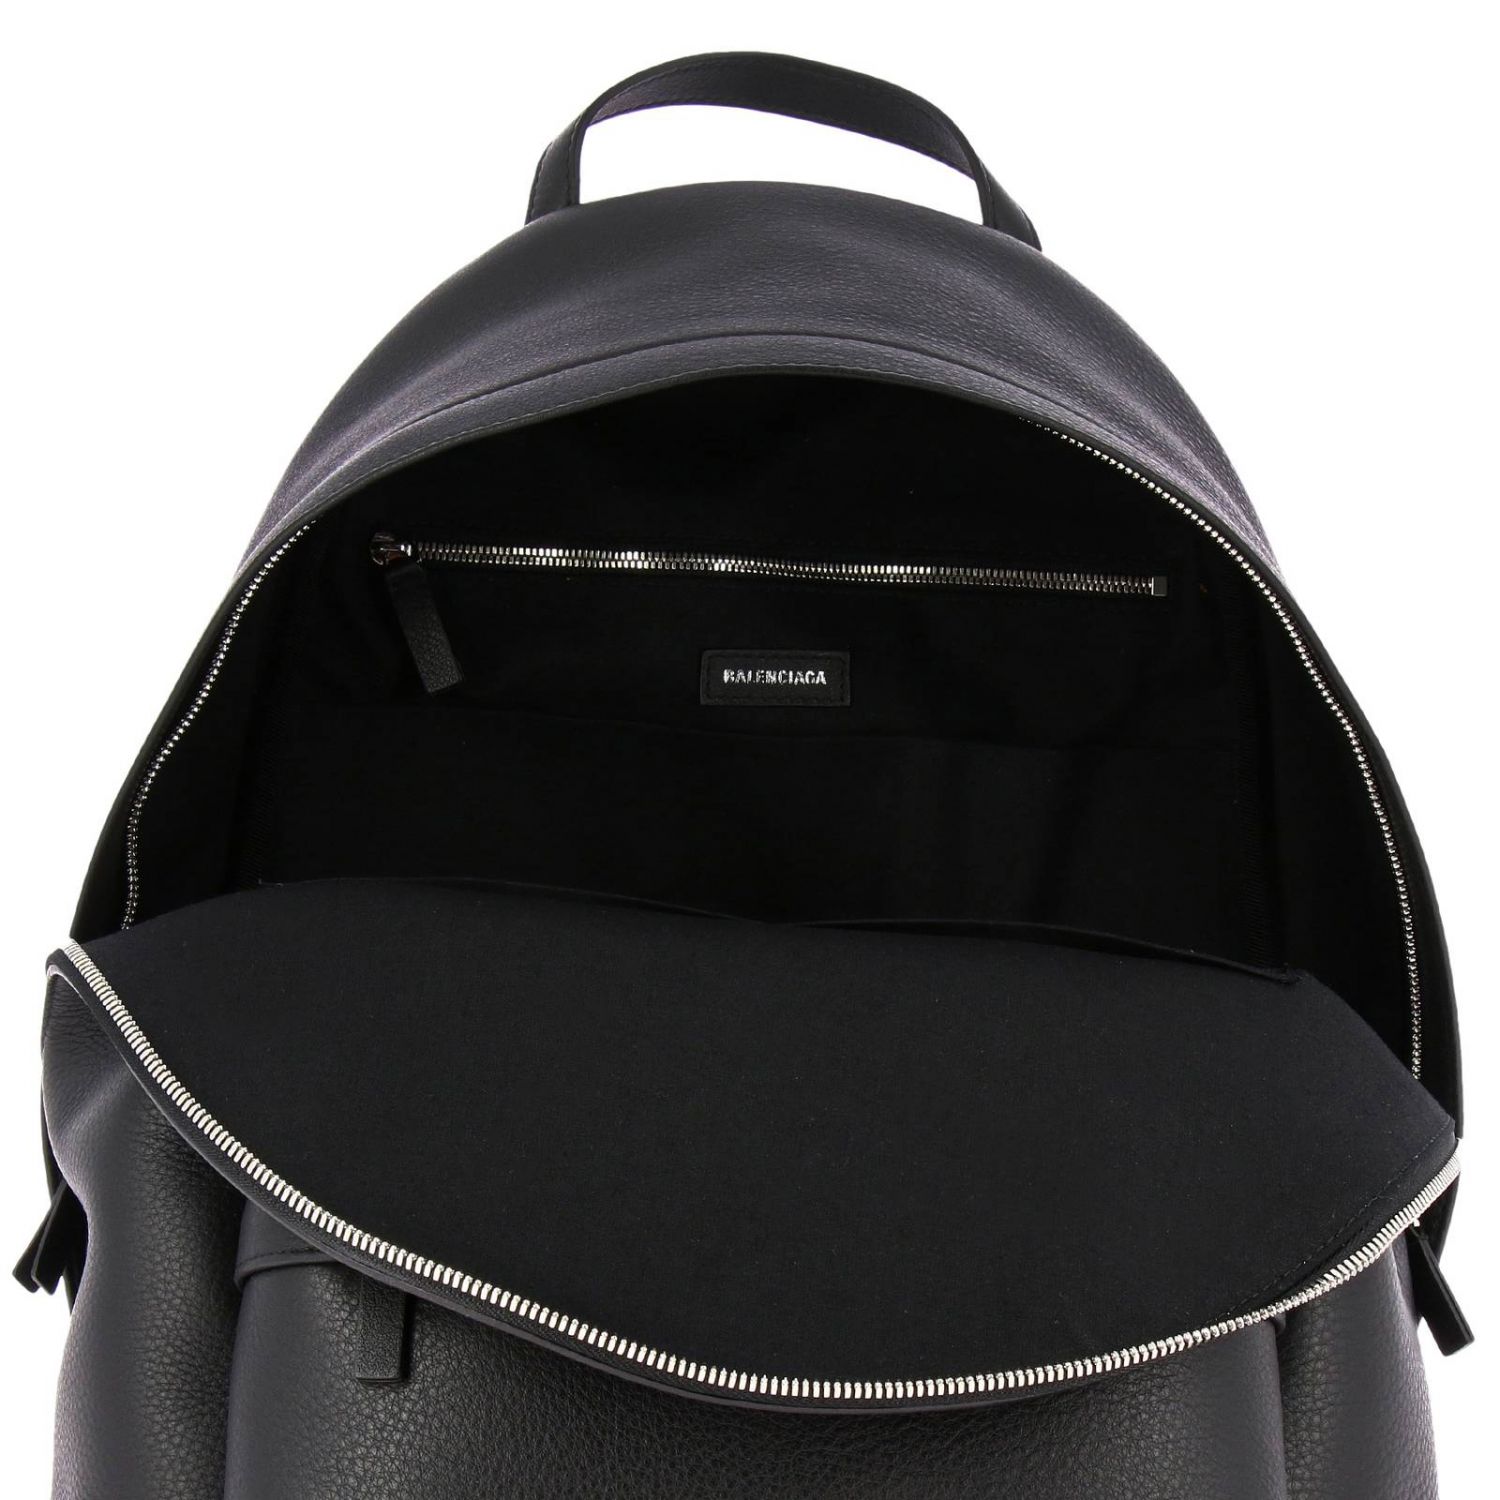 BALENCIAGA: Everyday backpack in leather with logo - Black | Balenciaga